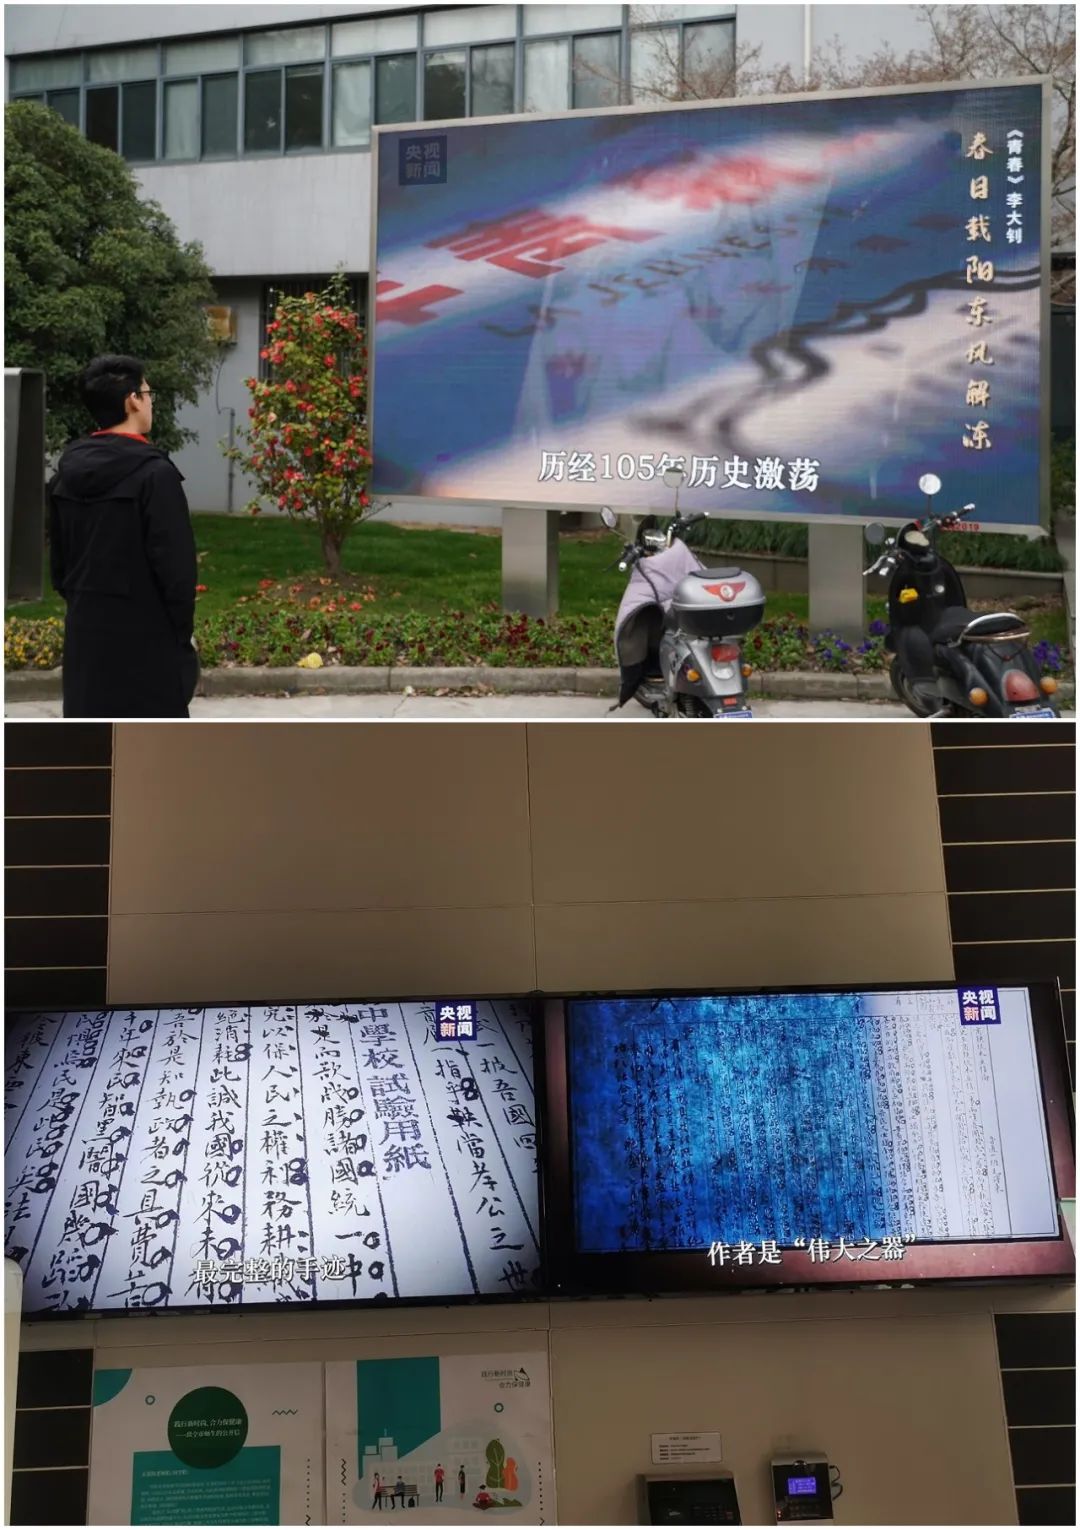 △上海交通大学、上海海洋大学播放央视新闻微纪录片《红色档案》。